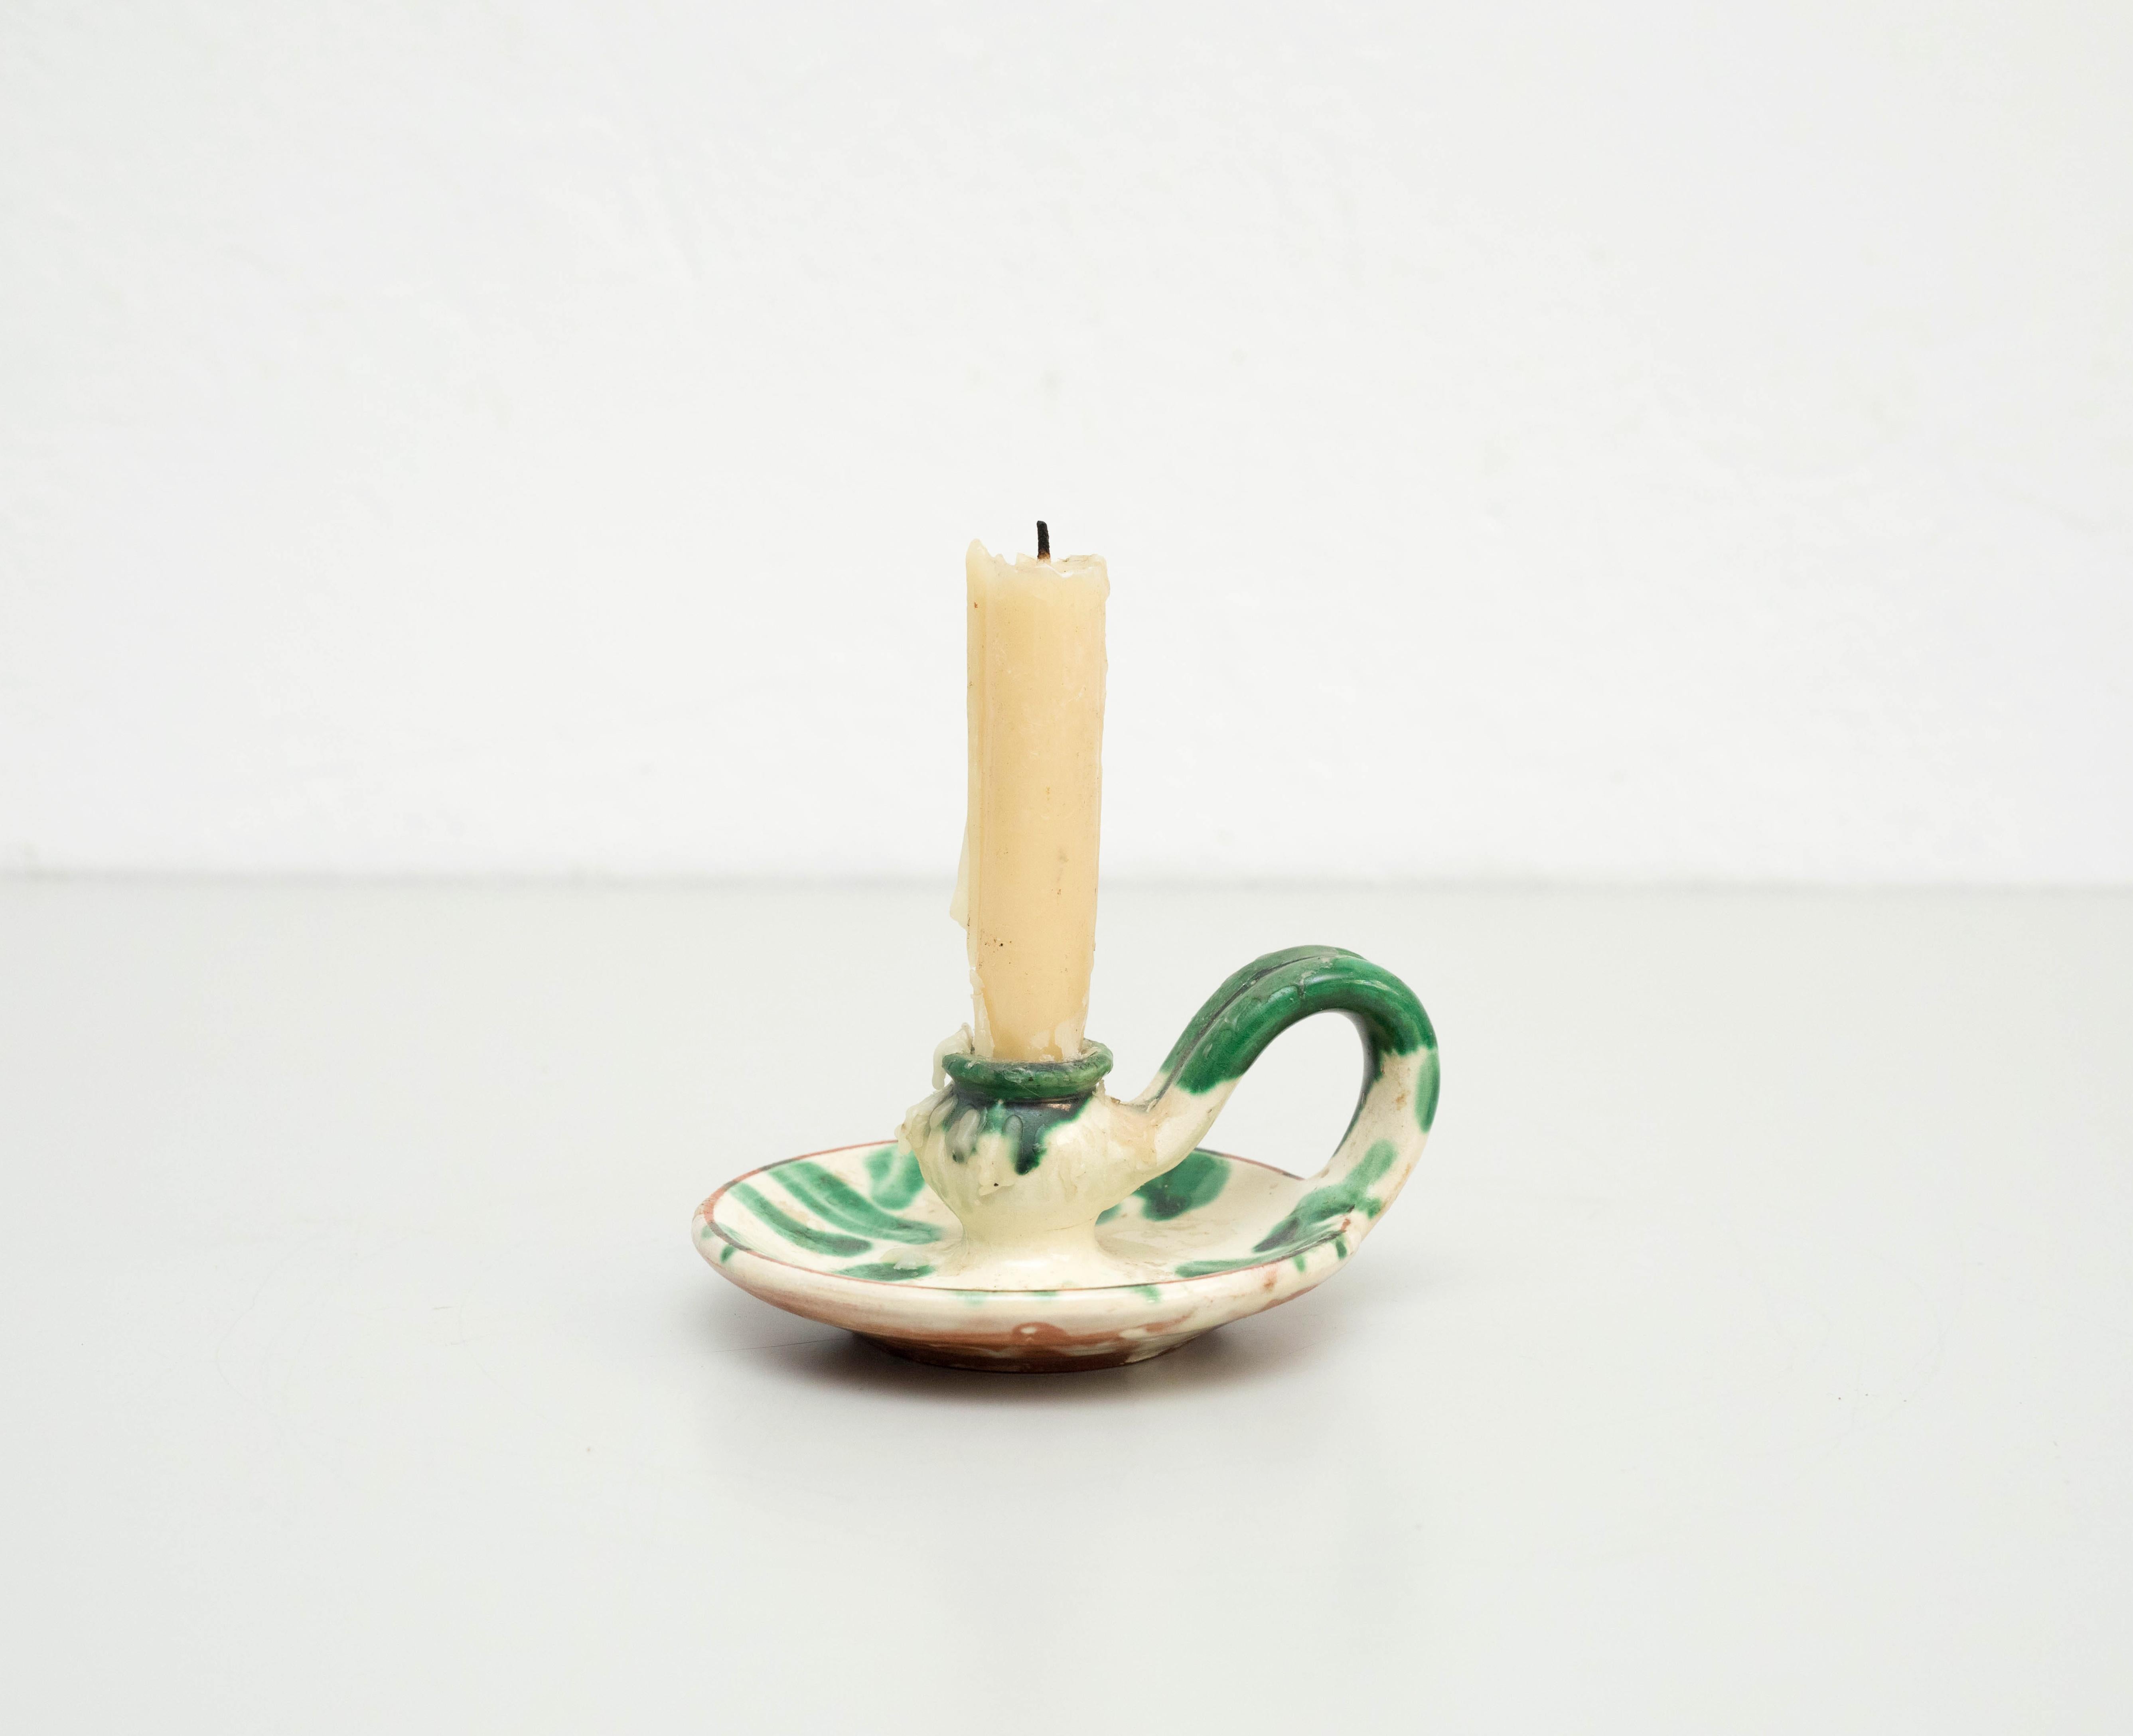 Rustikaler Keramik-Kerzenhalter, um 1960
Von Unbekanntem Hersteller. Spanien.
Originaler Zustand mit geringen alters- und gebrauchsbedingten Abnutzungserscheinungen, der eine schöne Patina aufweist.

MATERIALIEN:
Keramisch.
 
Kerze nicht